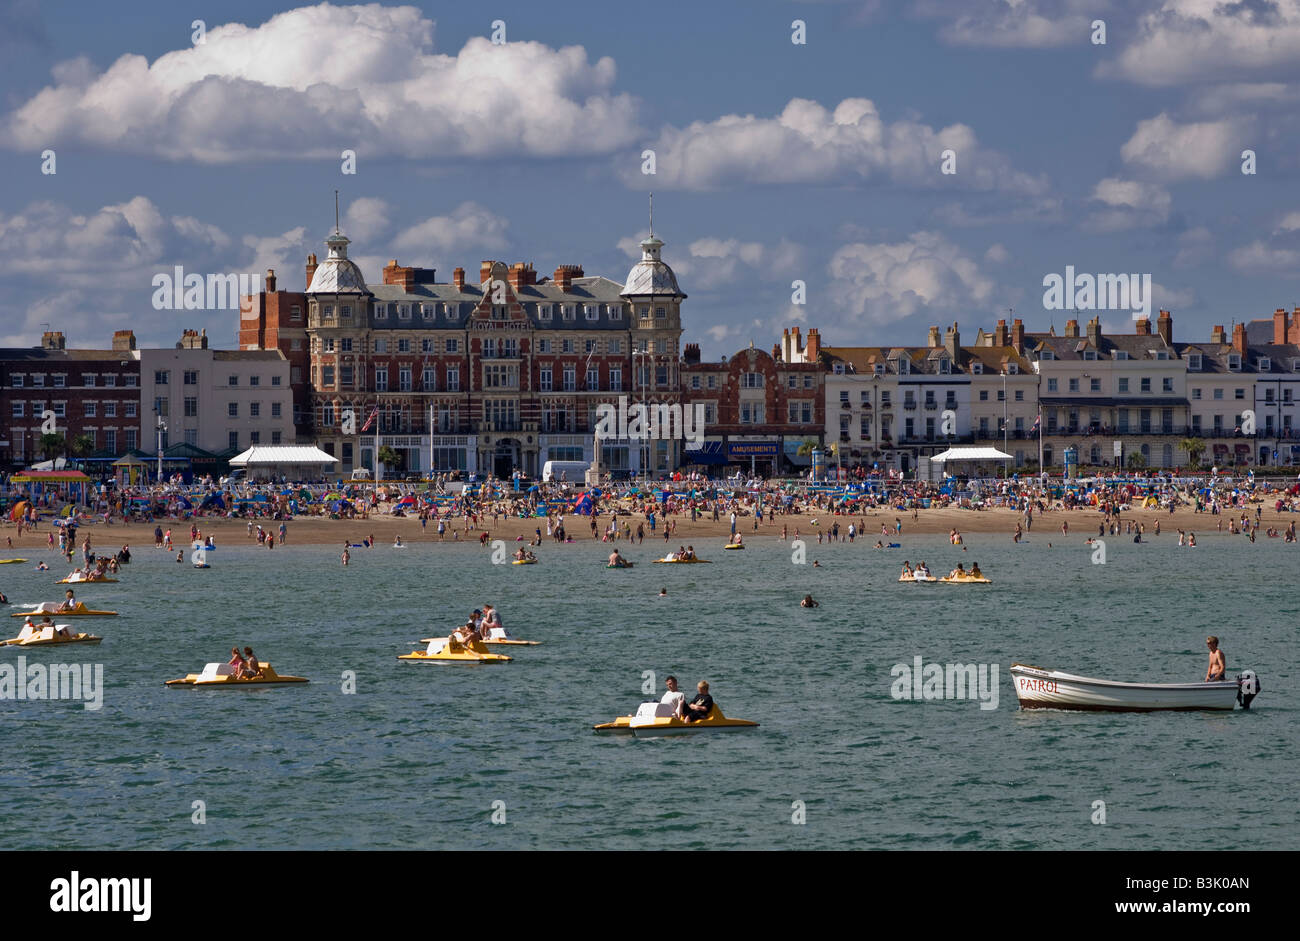 Paniers-plage sur le front de mer de Weymouth, dans le Dorset sur une belle journée ensoleillée Banque D'Images